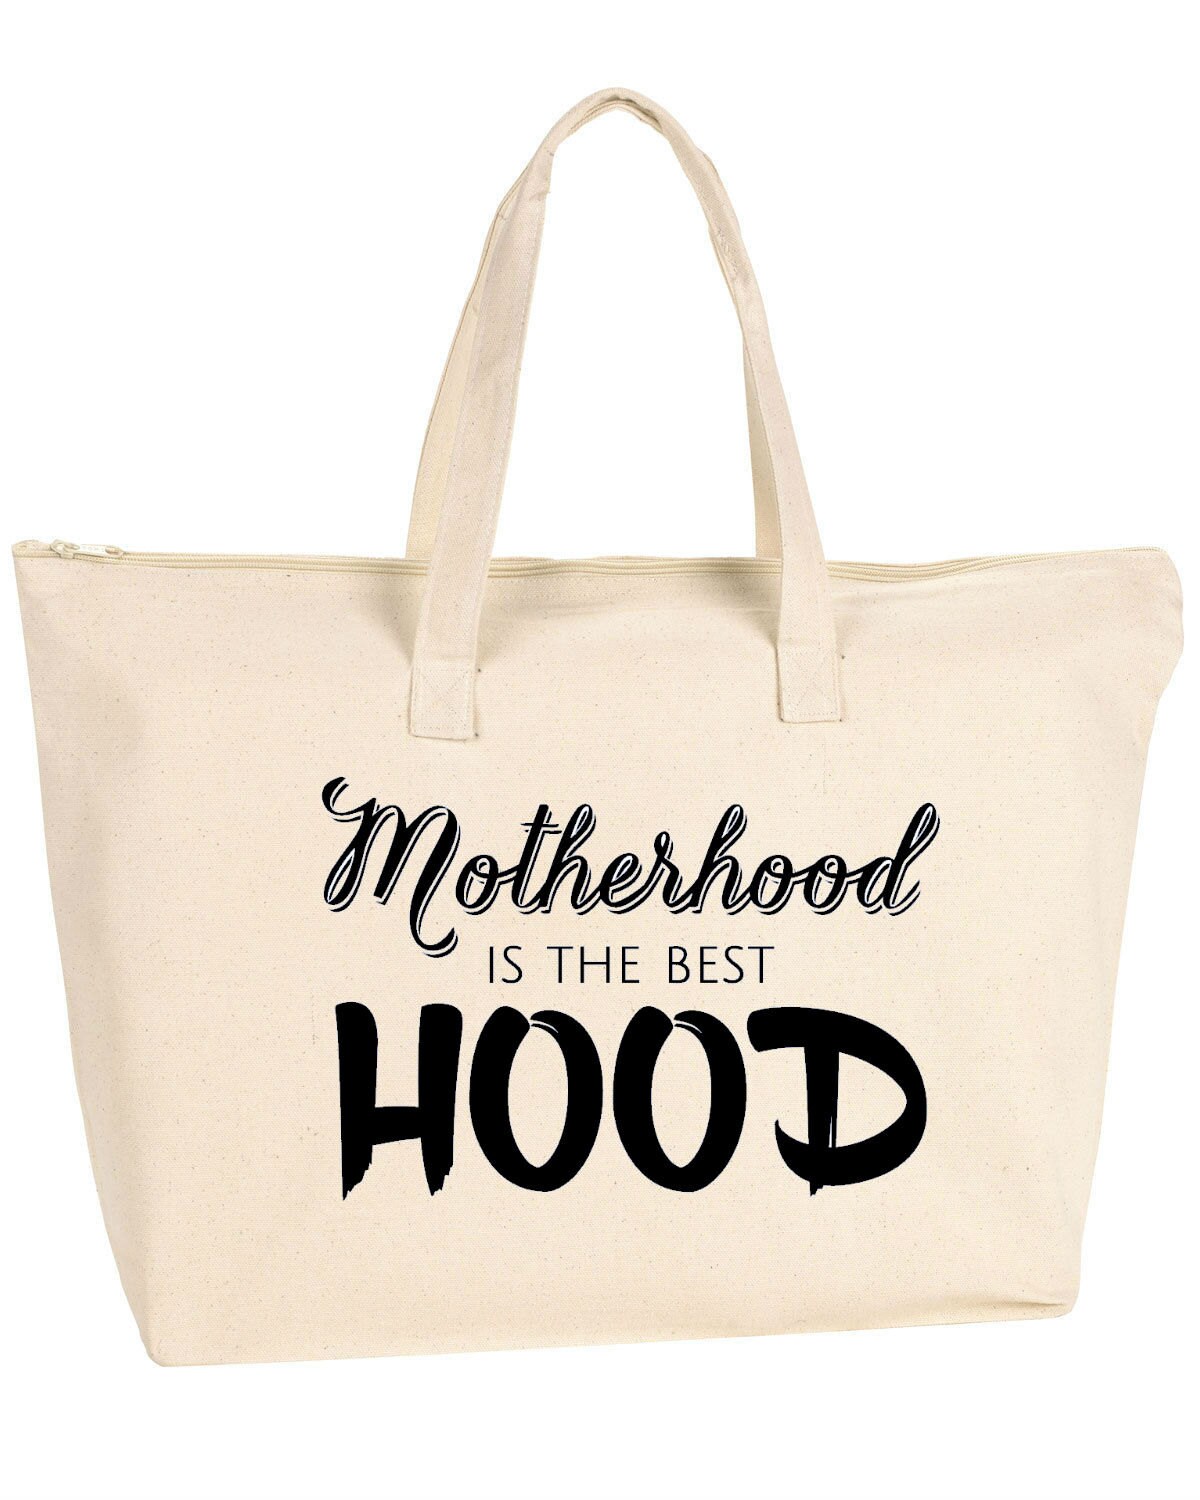 Motherhood is the best Hood tote / tote bag diaper bag gym | Etsy